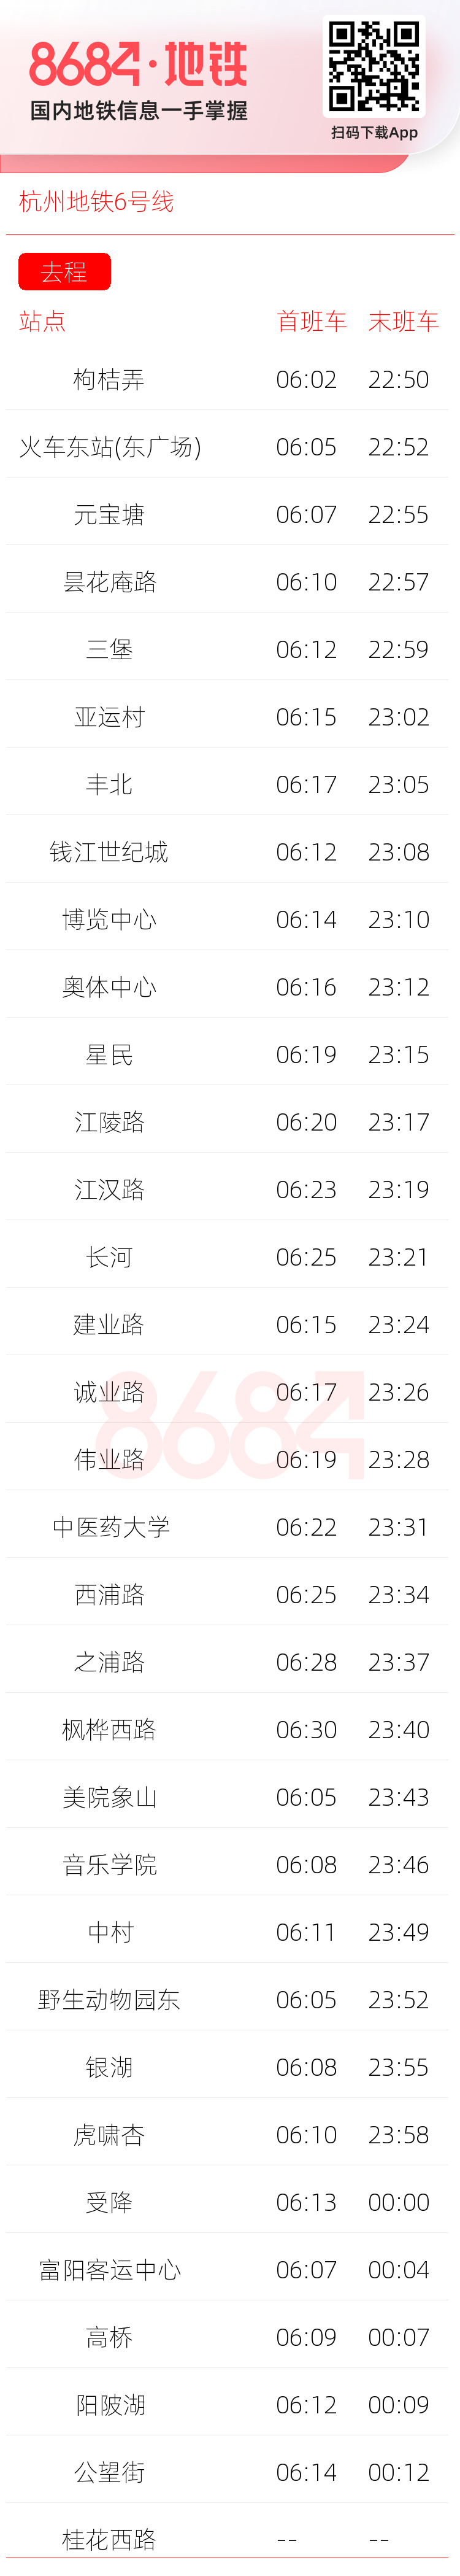 杭州地铁6号线运营时间表